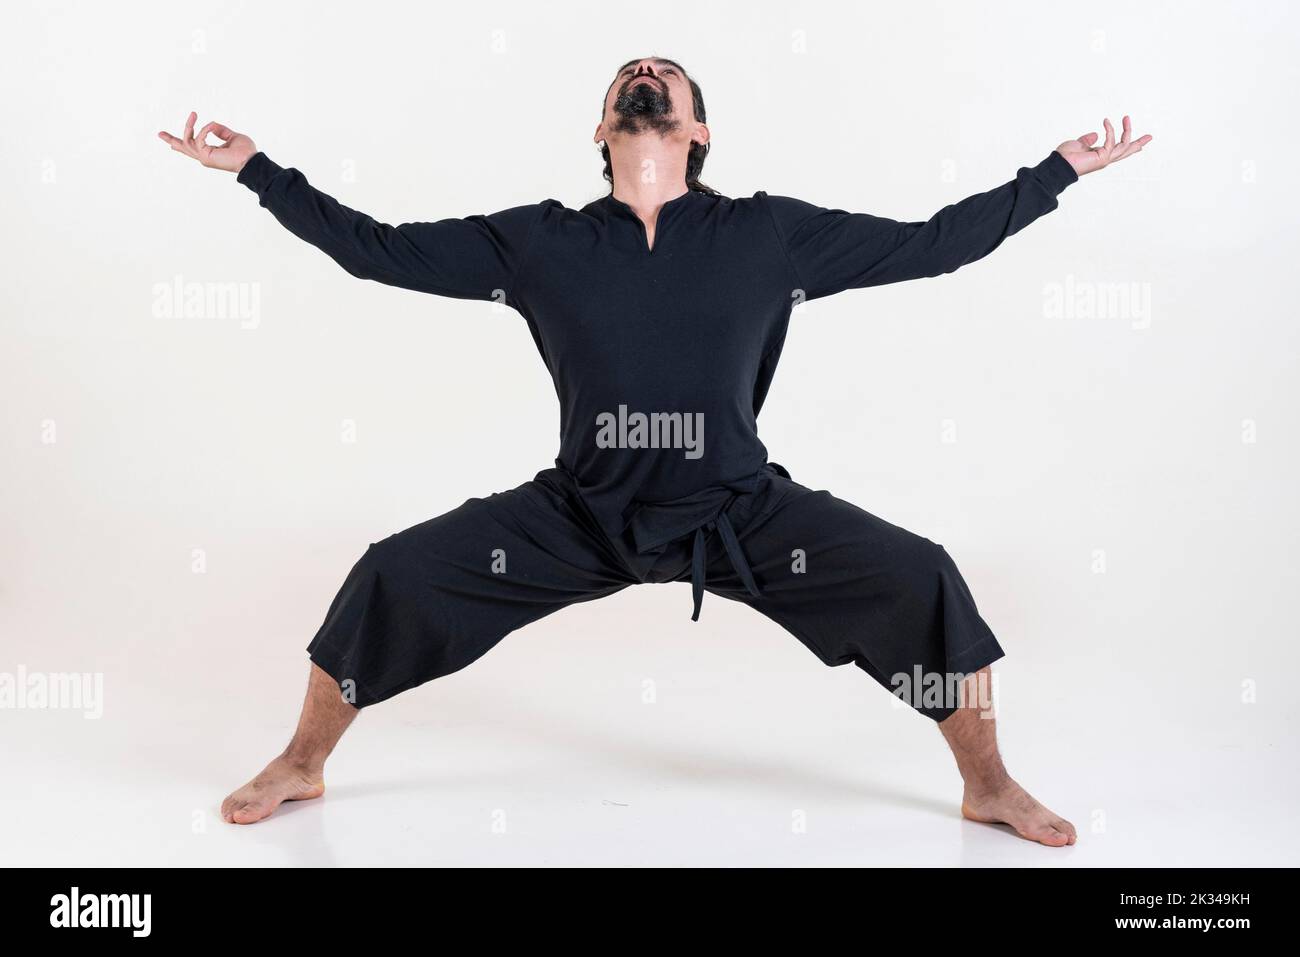 Un homme vêtu de noir faisant du yoga sur fond blanc. Utkata konasana pose de yoga. Prise de vue en studio Banque D'Images